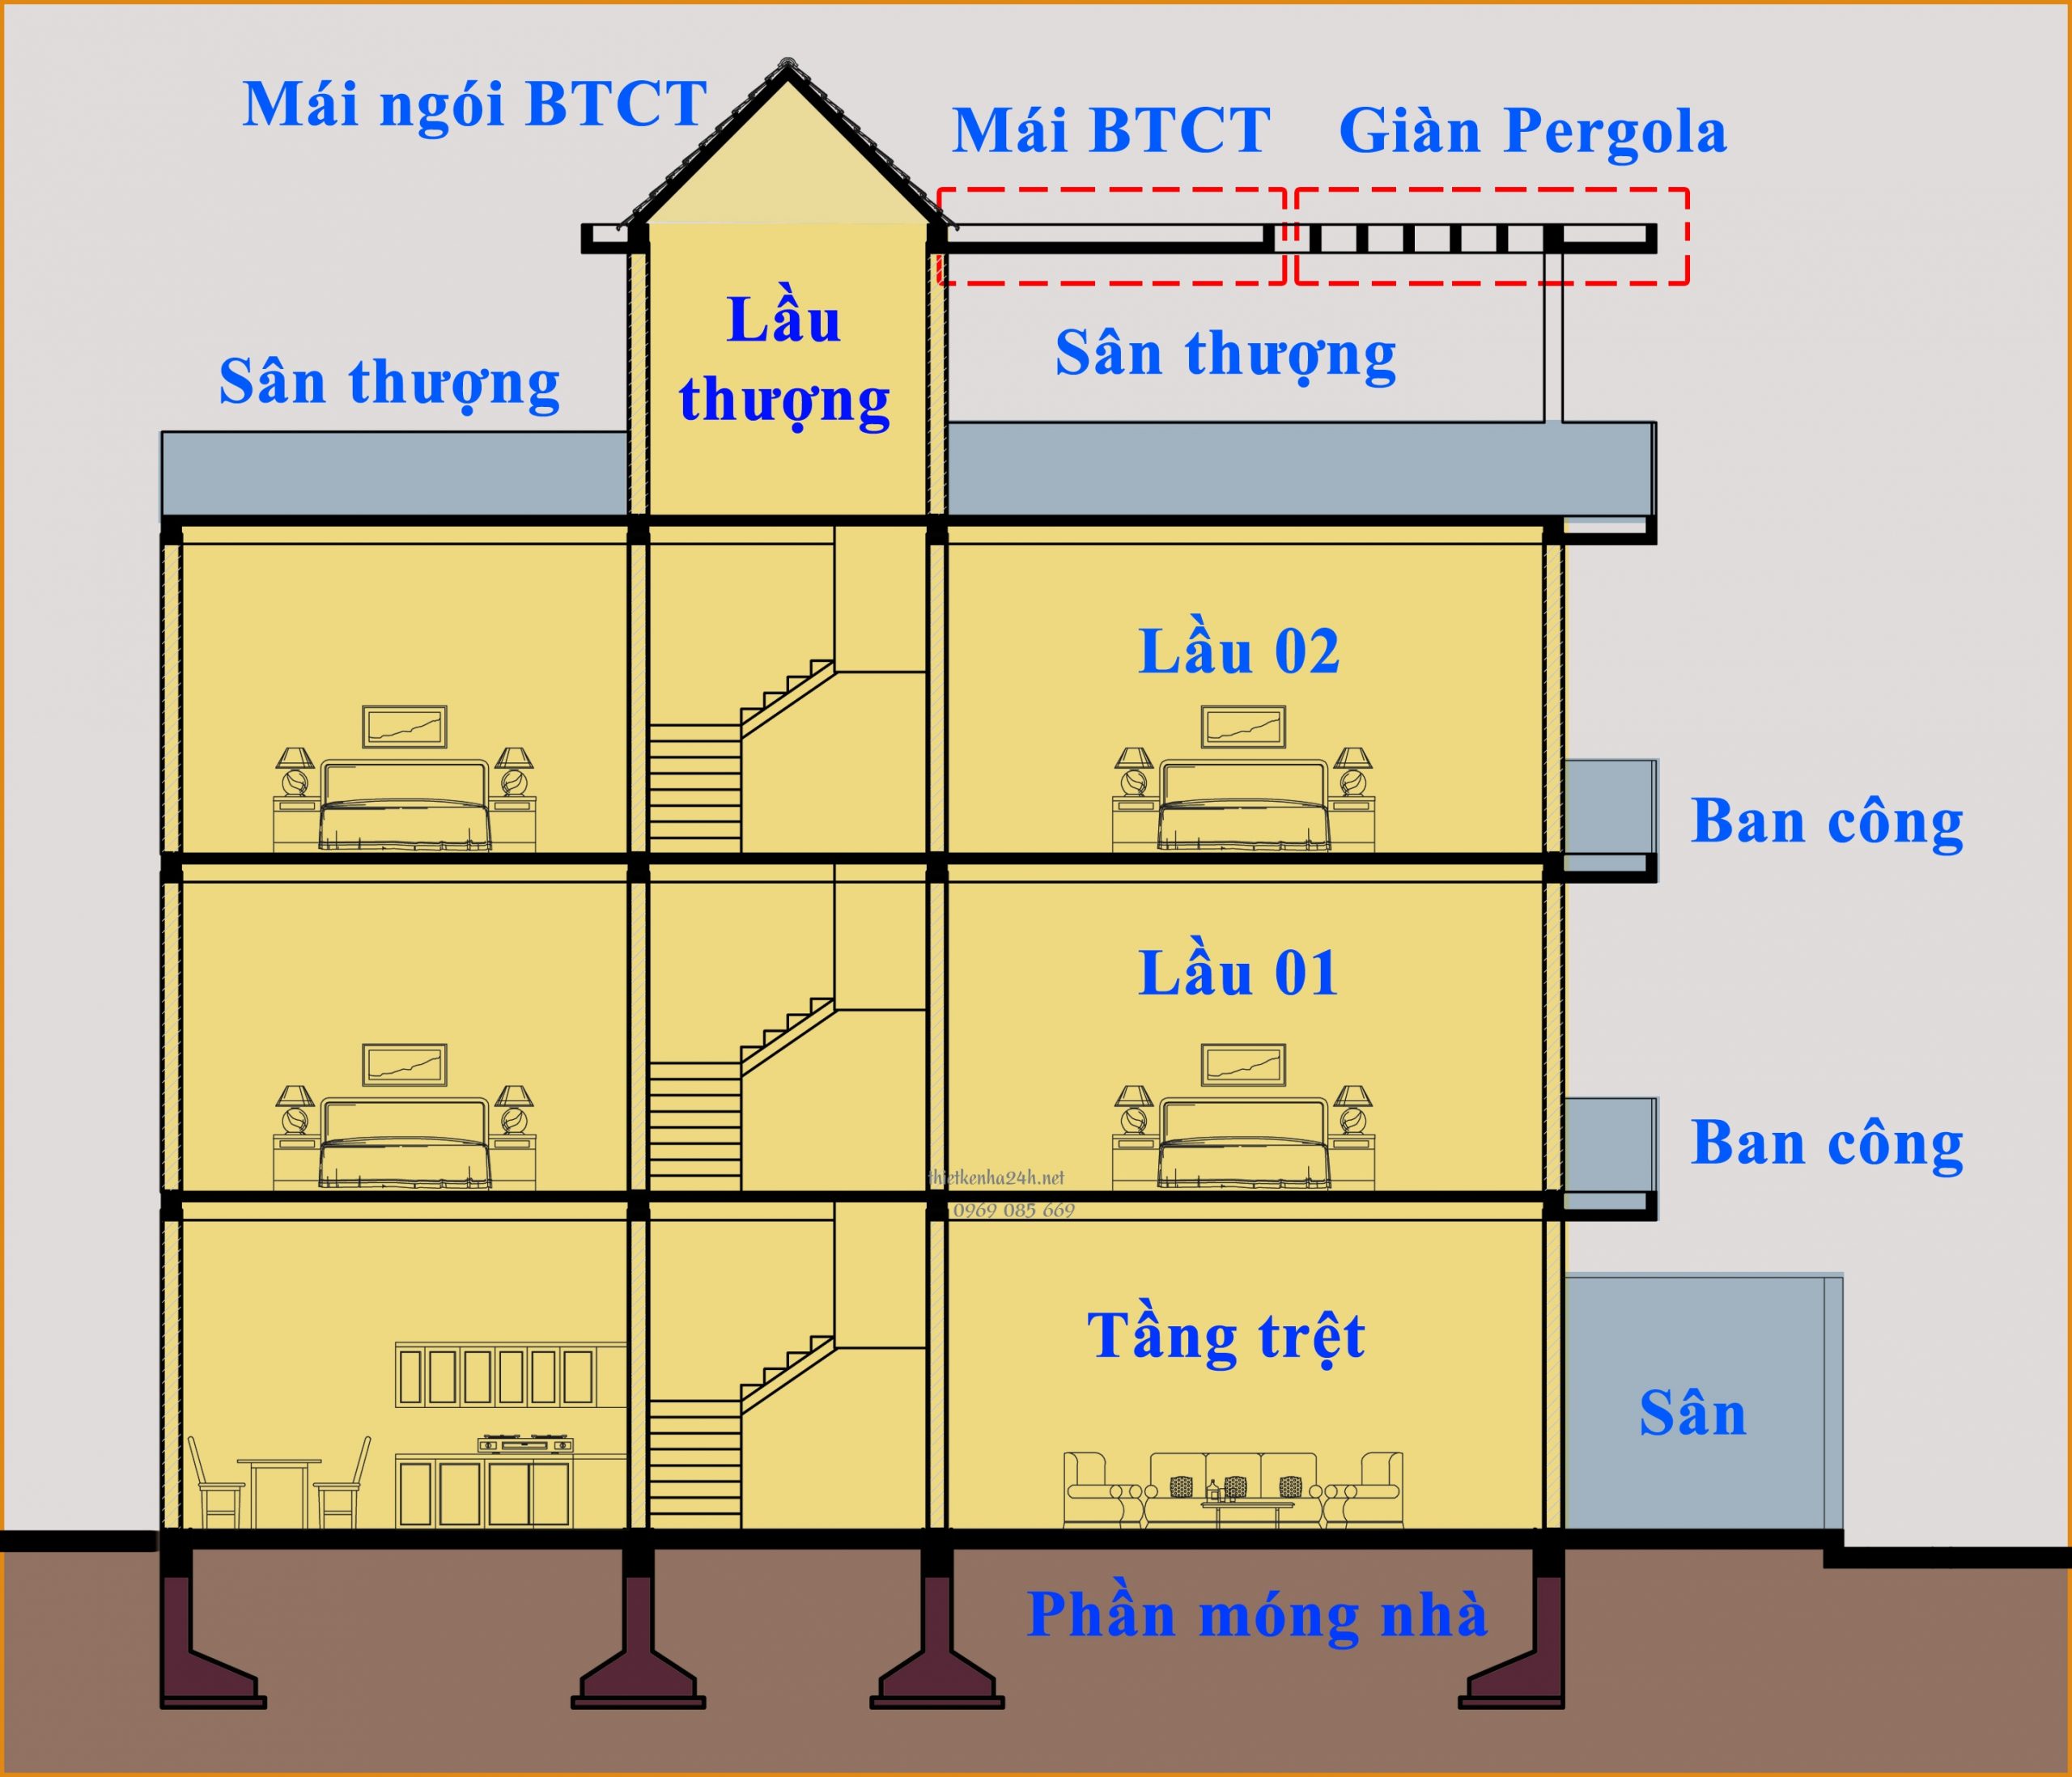 Tổng diện tích sàn sẽ bằng tổng diện tích của các tầng trong công trình xây dựng